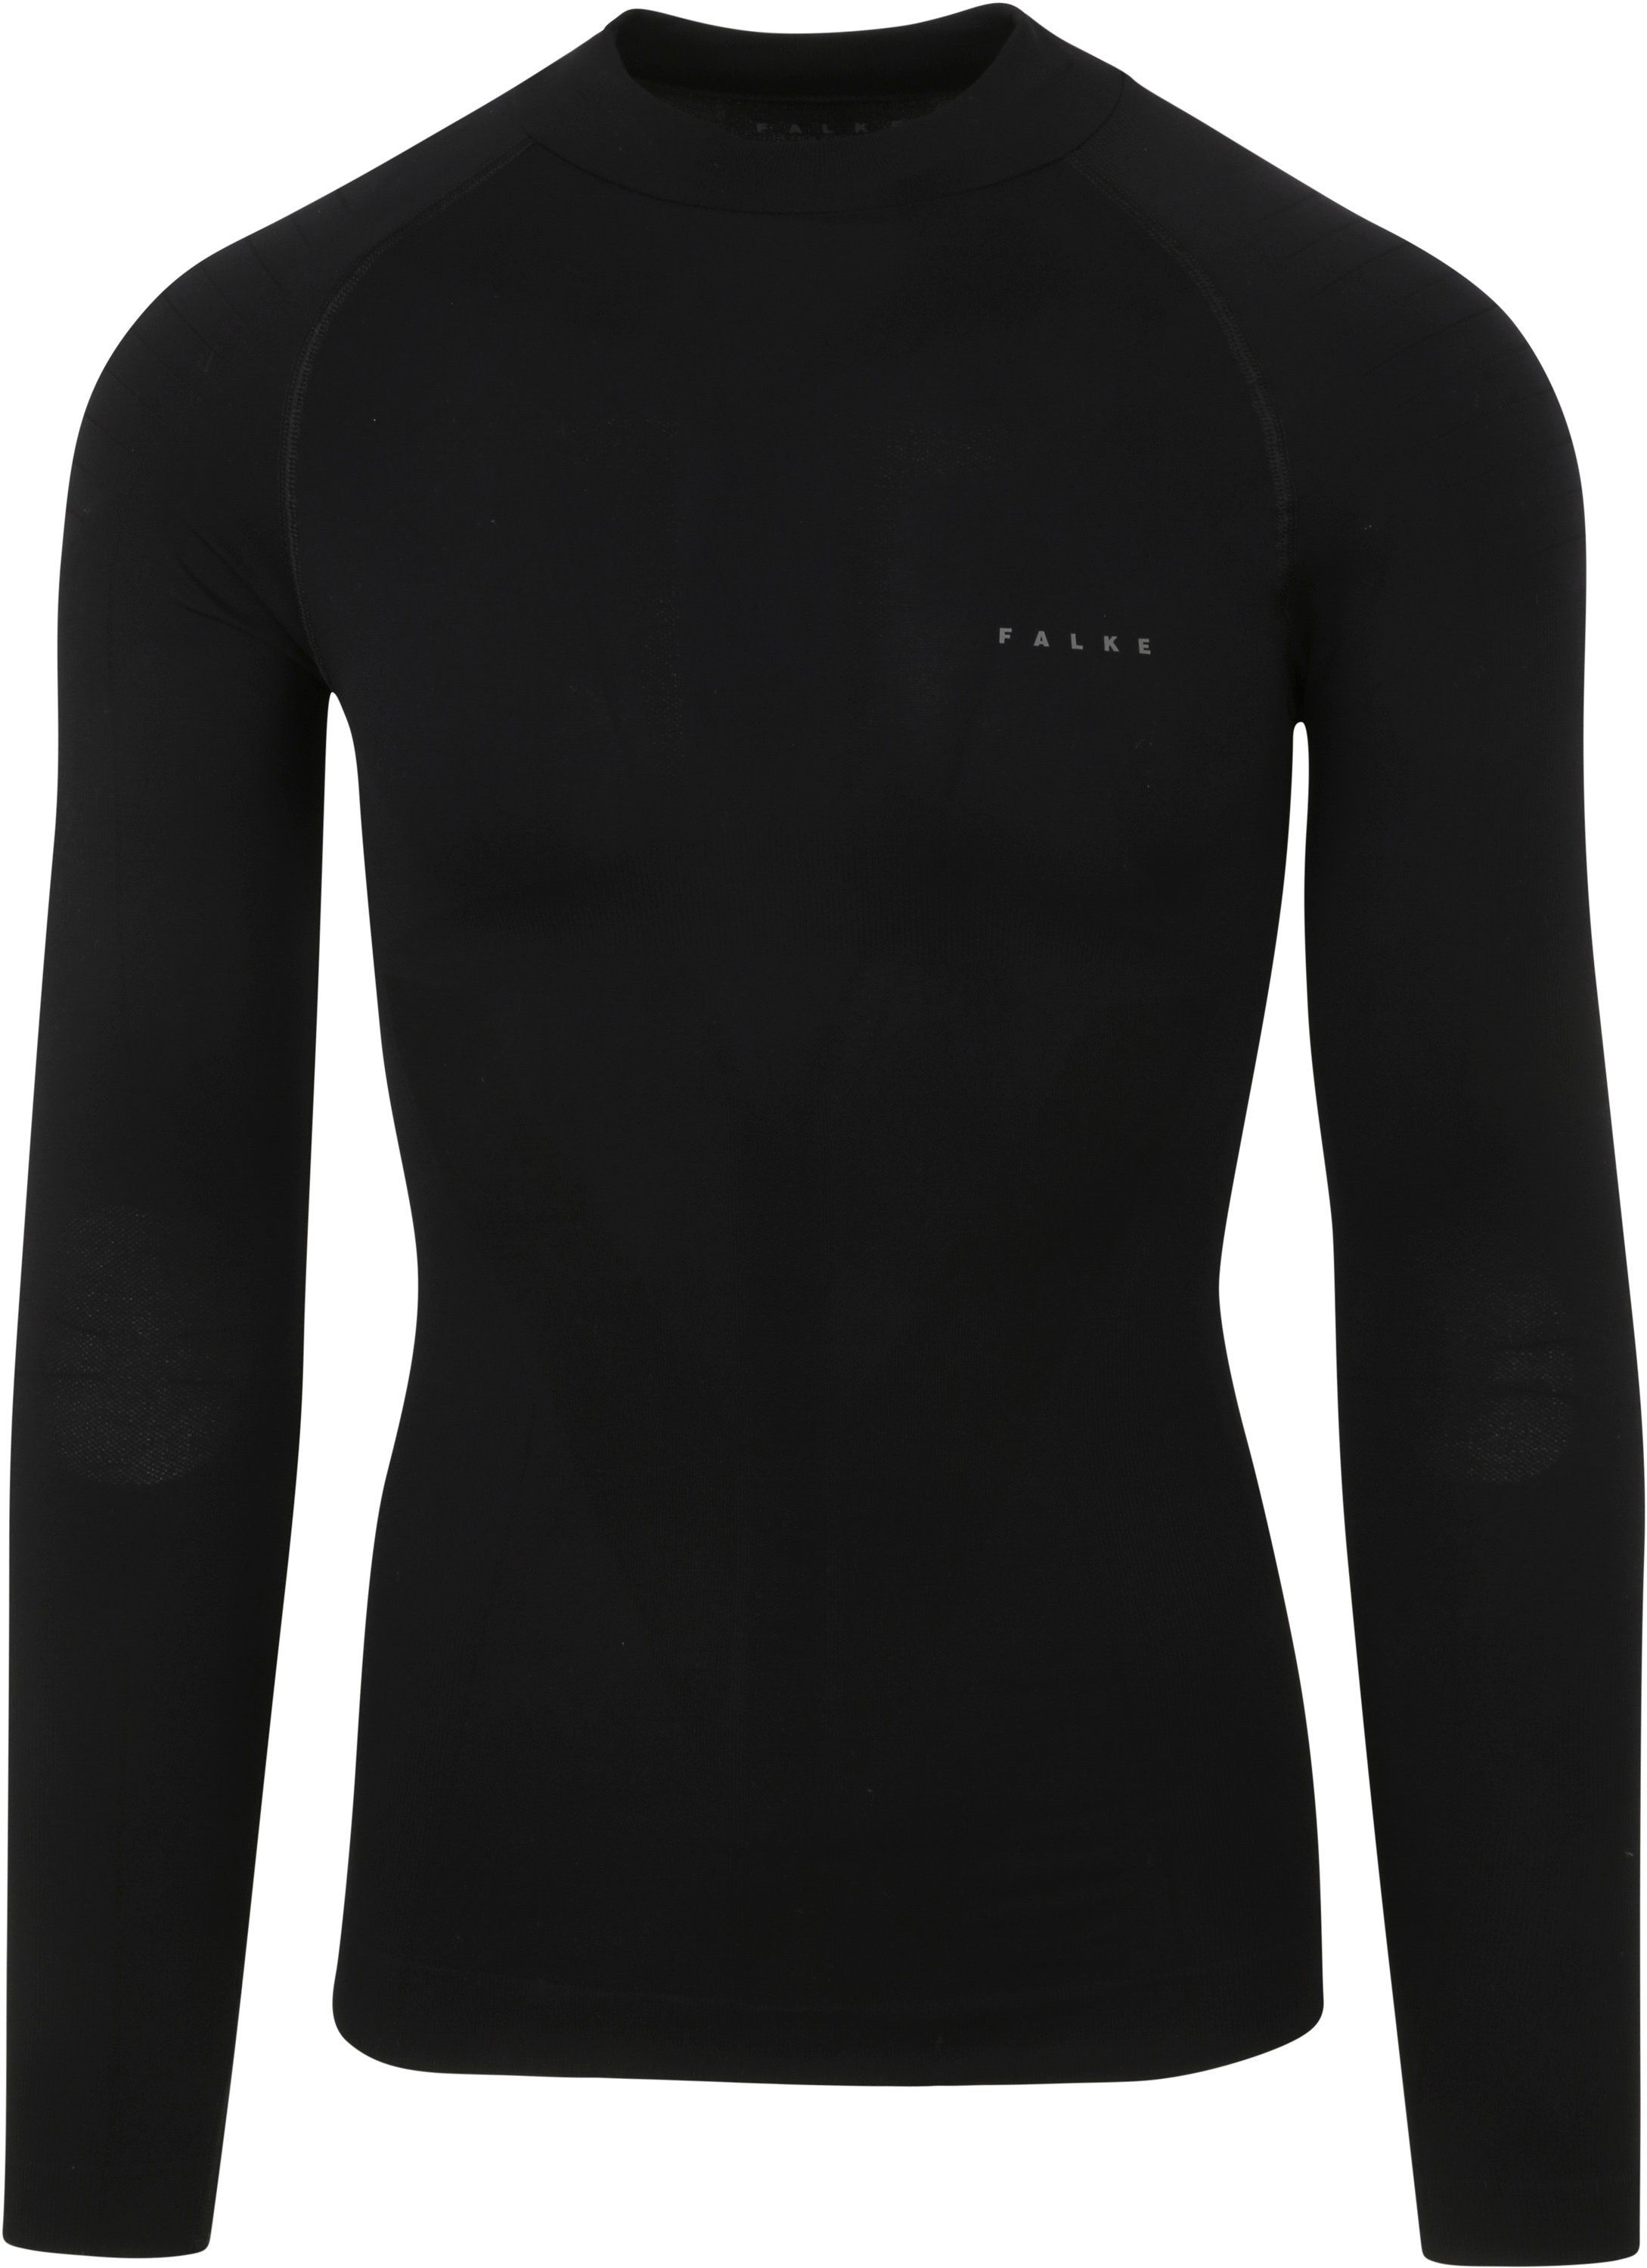 Falke Thermal Shirt Turtleneck Black size XL